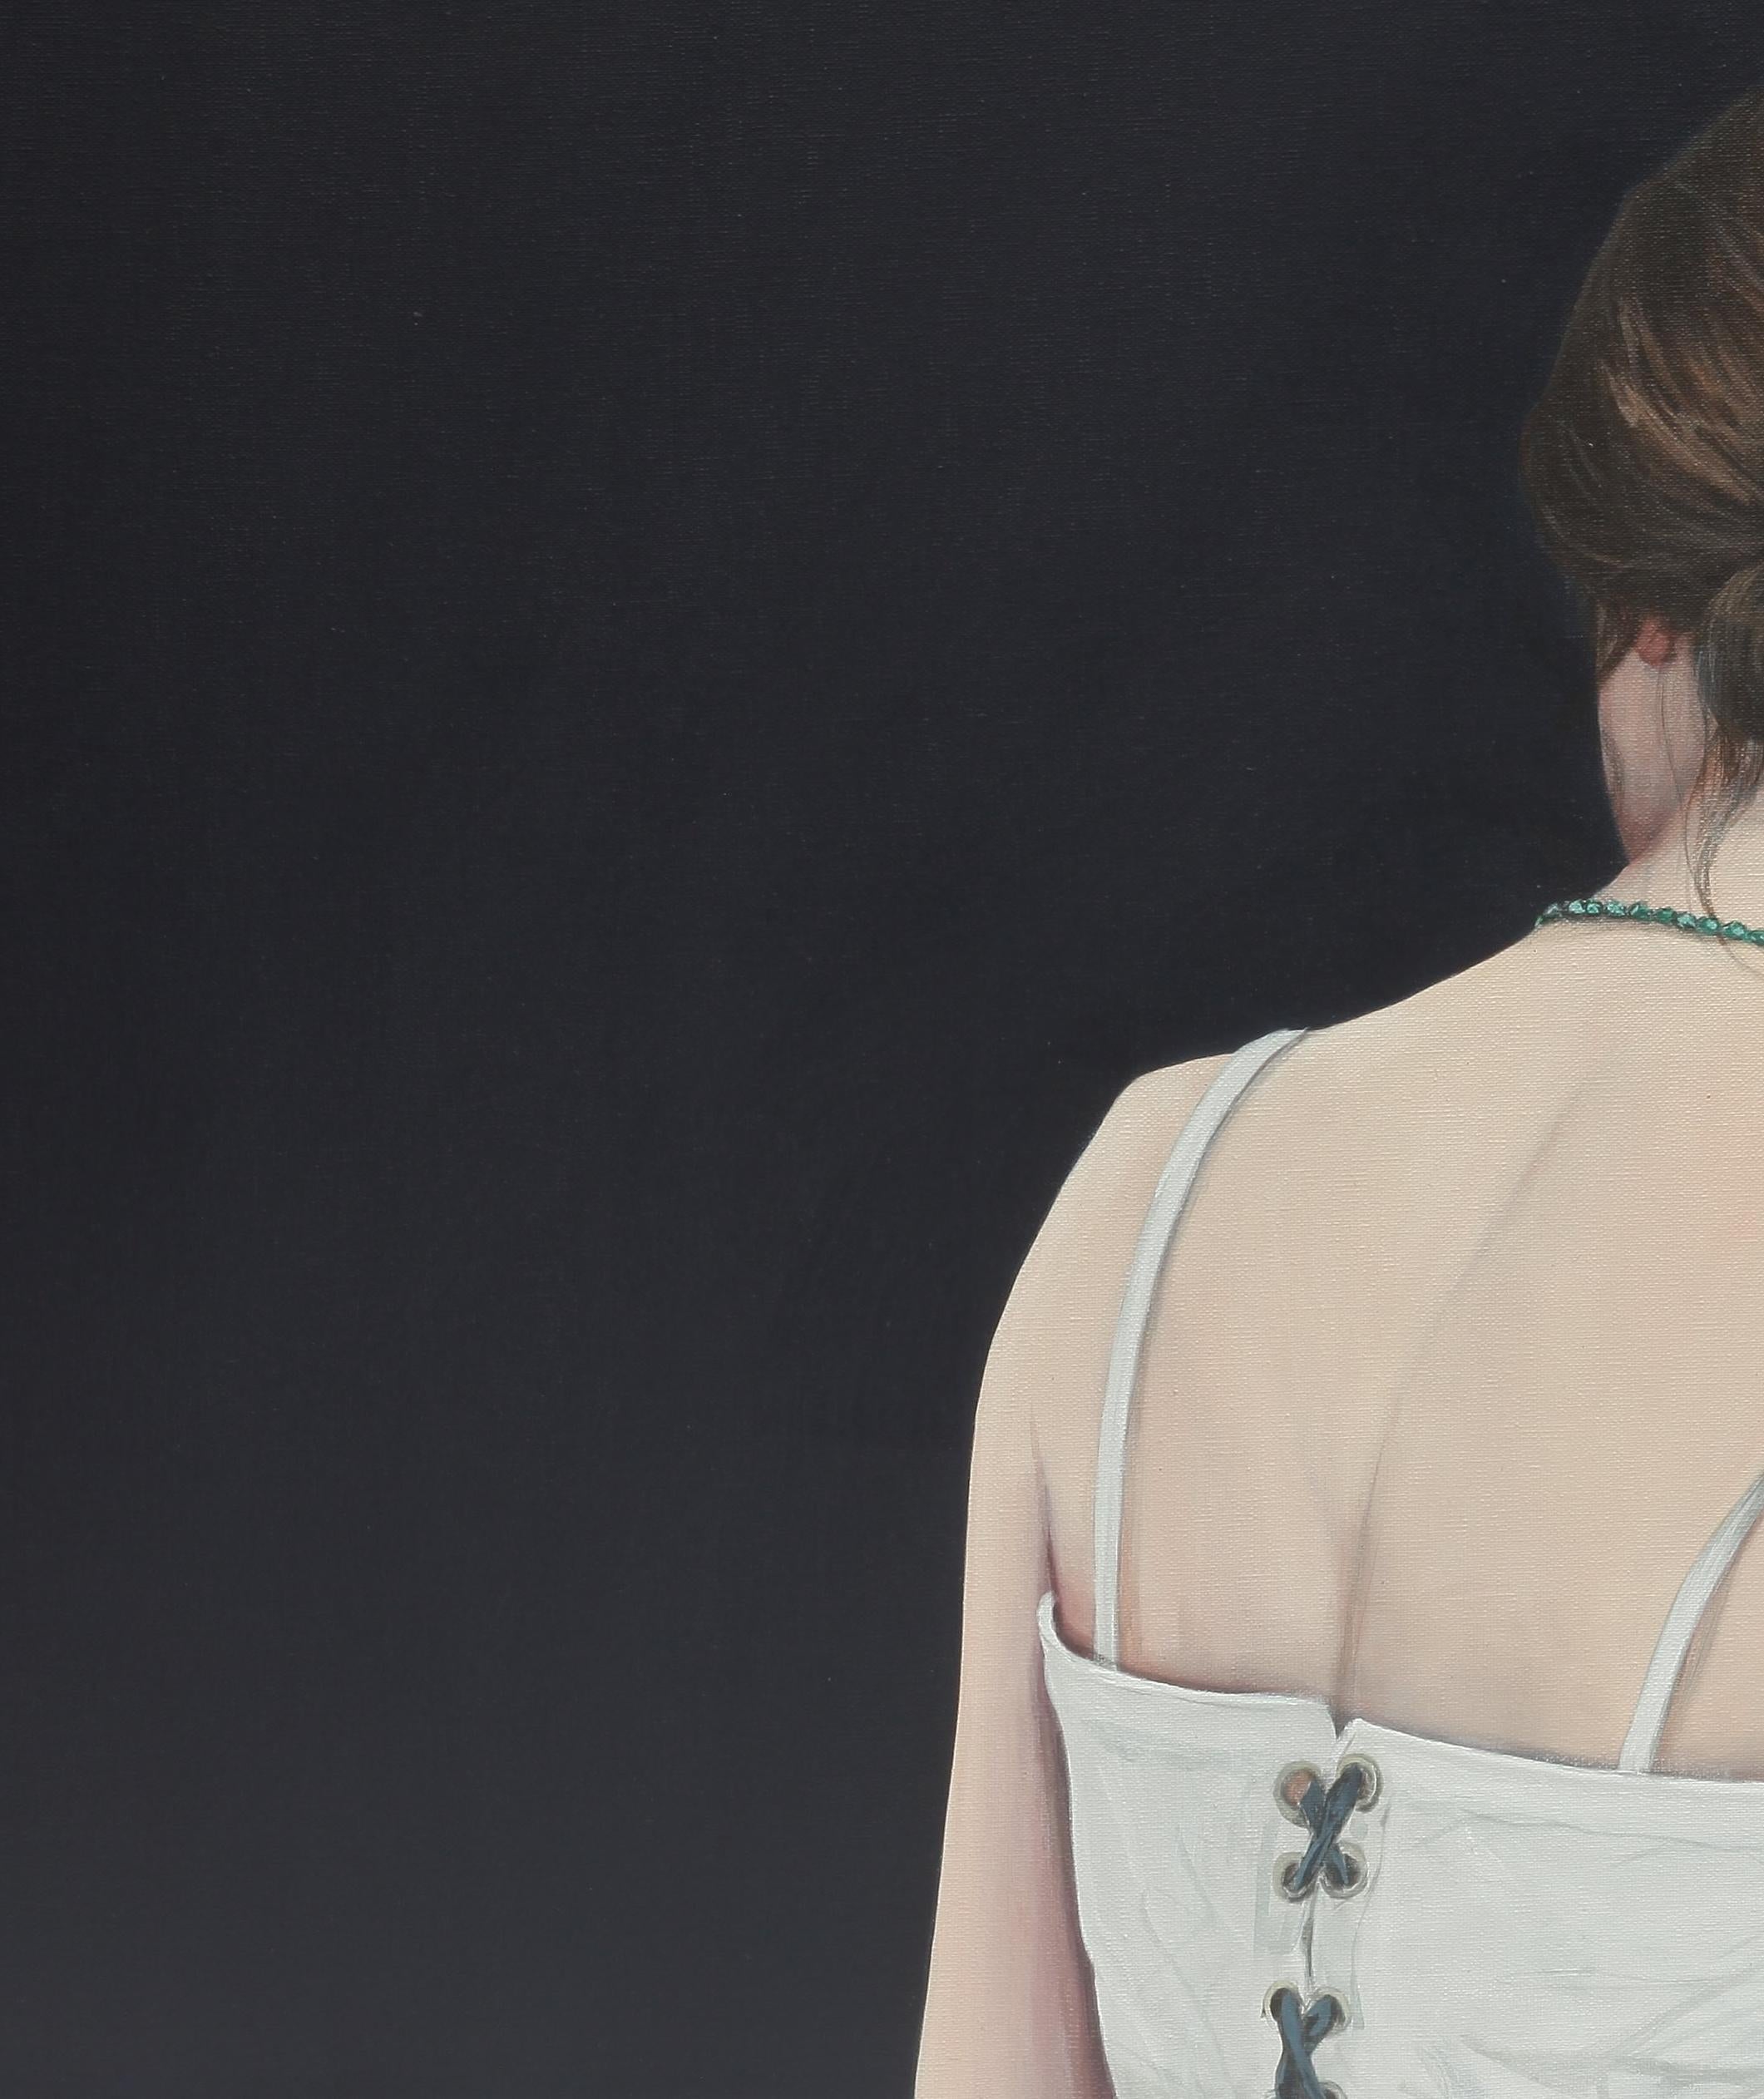 Contemporary Portrait eines Mädchens mit Dutt und weißem Top auf schwarzem Hintergrund (Zeitgenössisch), Painting, von Karoline Kroiss